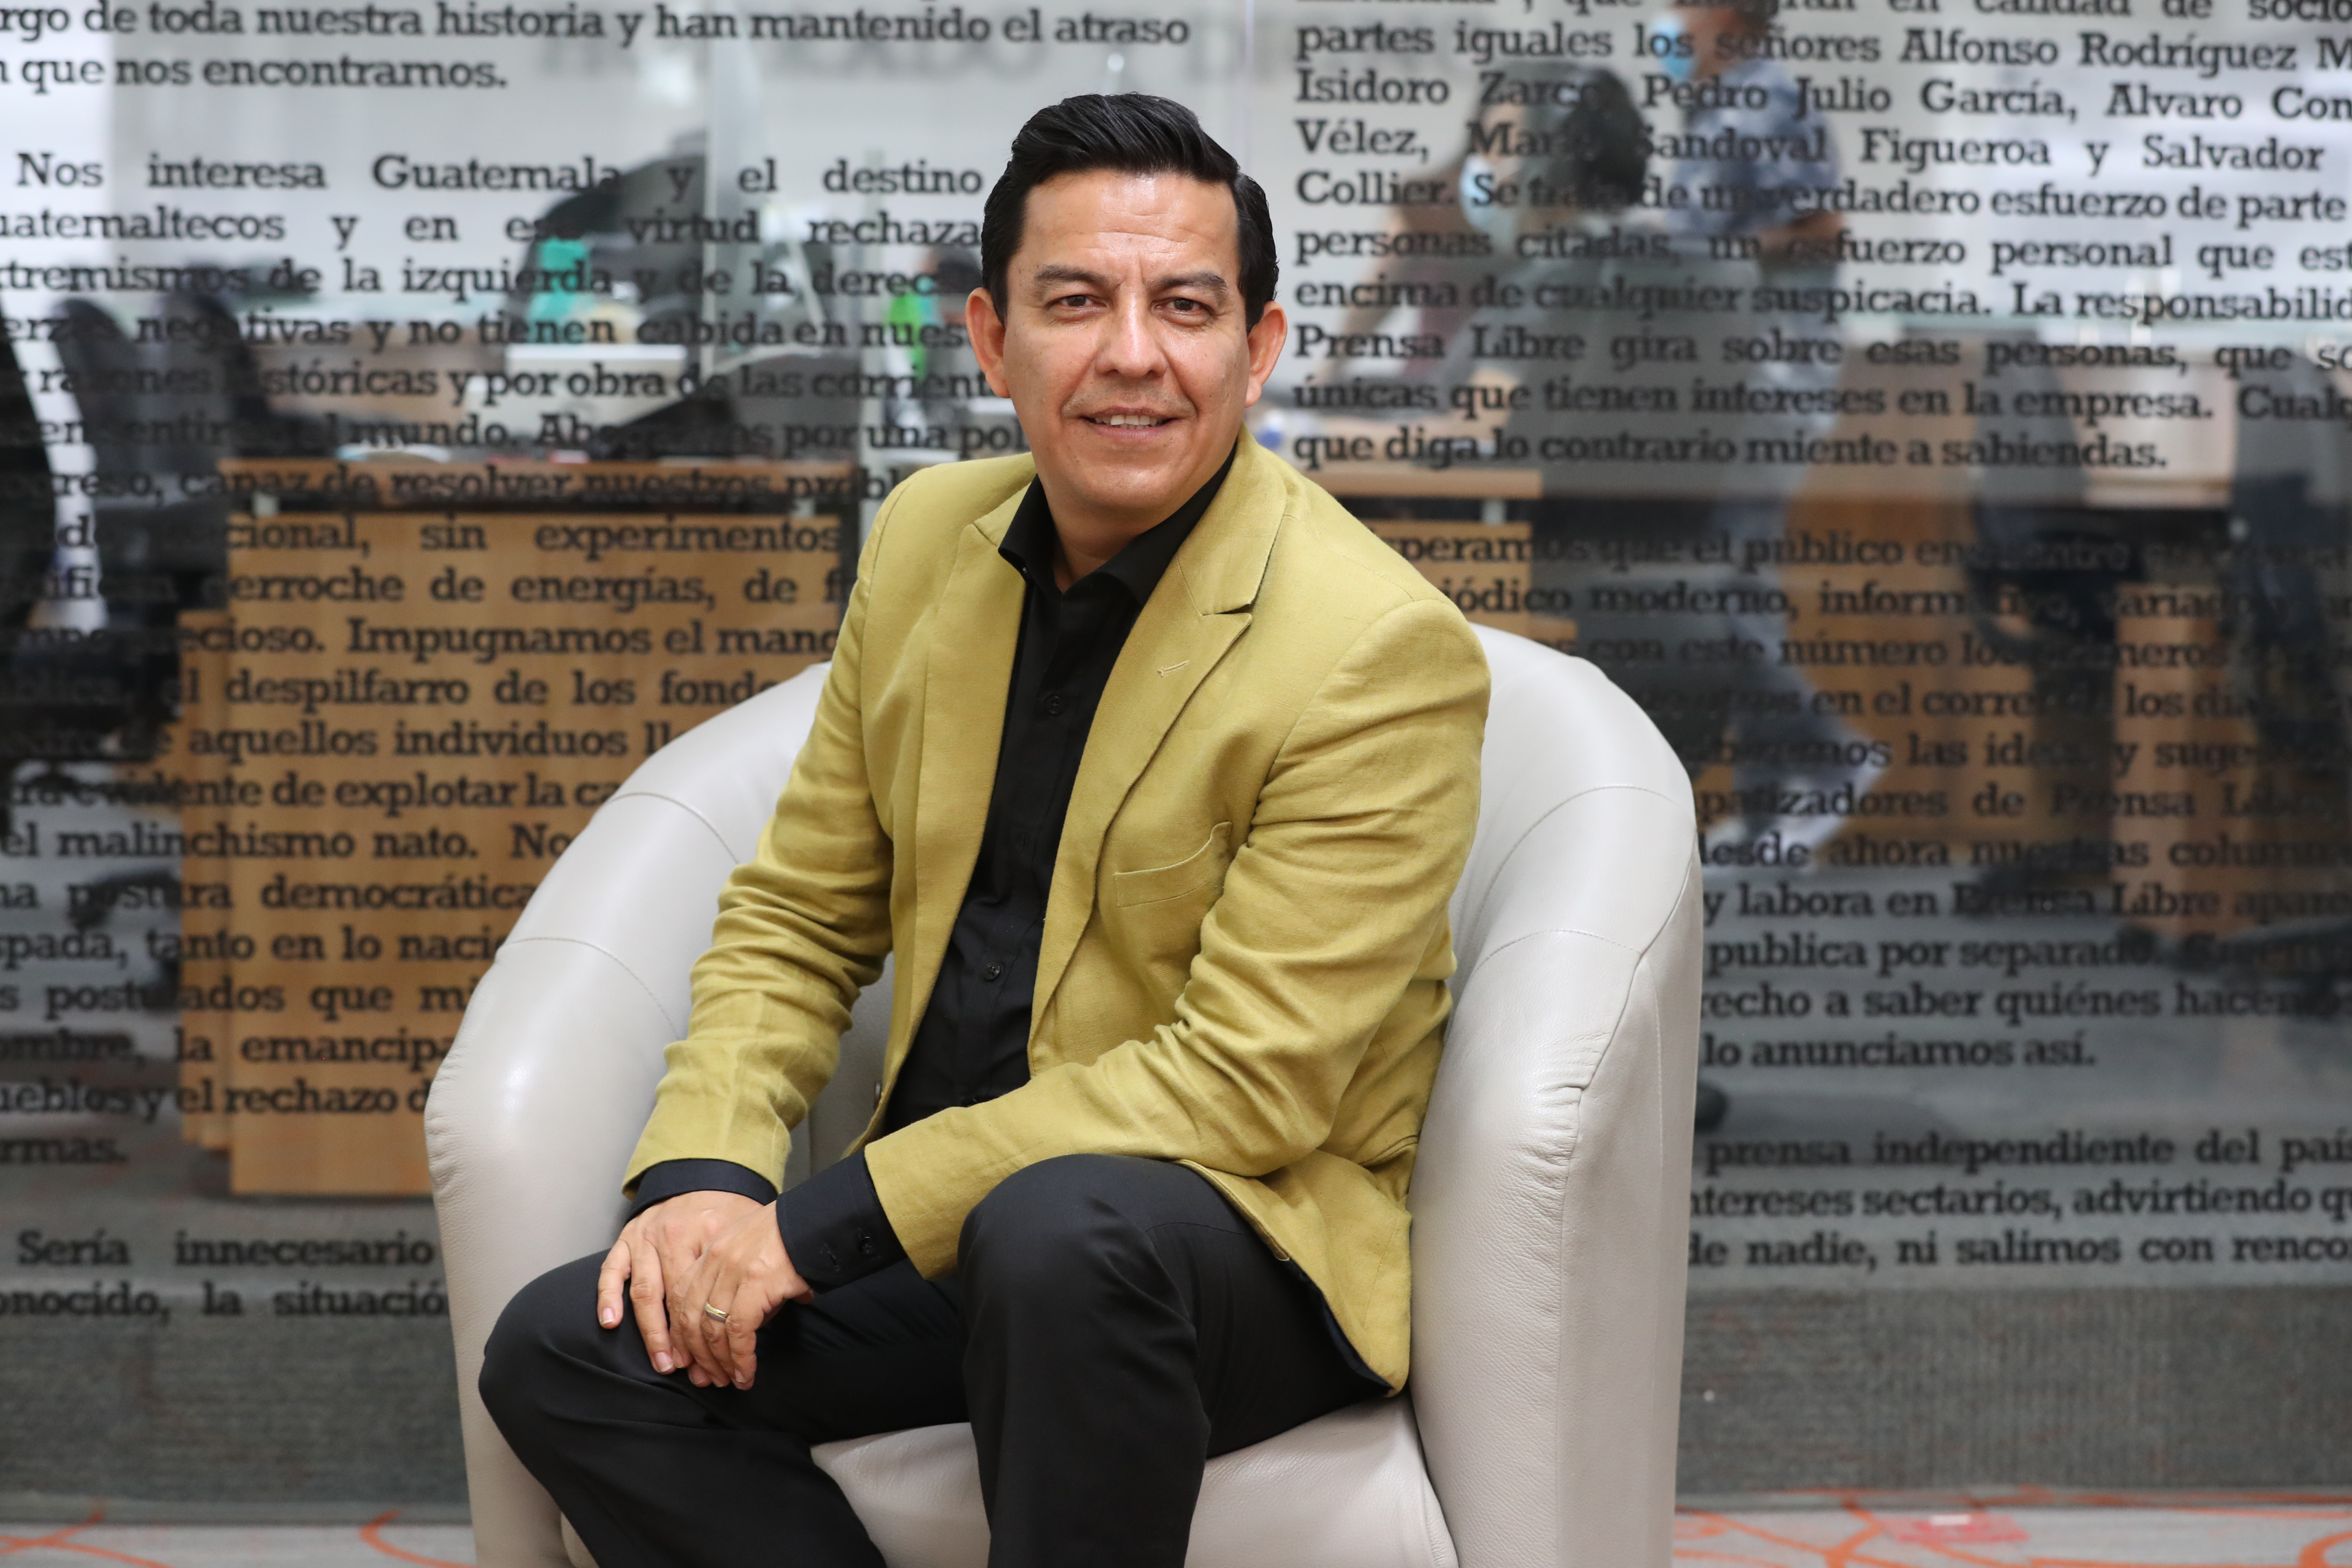 El cantautor Aroddy Espinales, originario de Chiquimula es noninado a los Latin Grammy 2021 en la categoría de Mejor Álbum Cristiano en español.  Aquí en las instalaciones de Prensa Libre.
(Foto Prensa Libre: María Reneé Barrientos Gaytan).